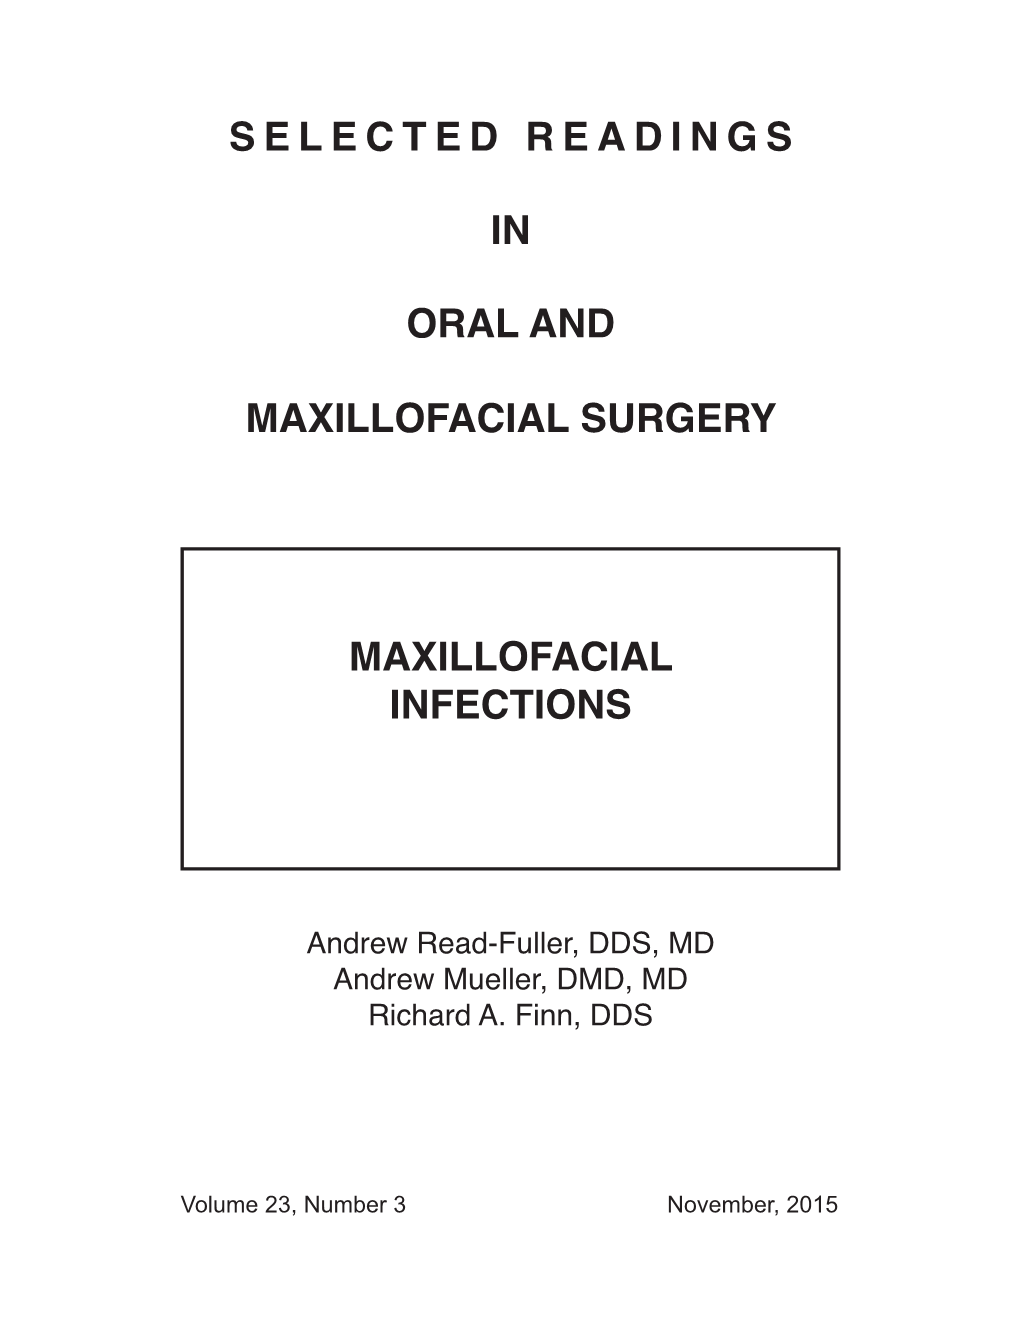 Selectedreadings in Oral and Maxillofacial Surgery